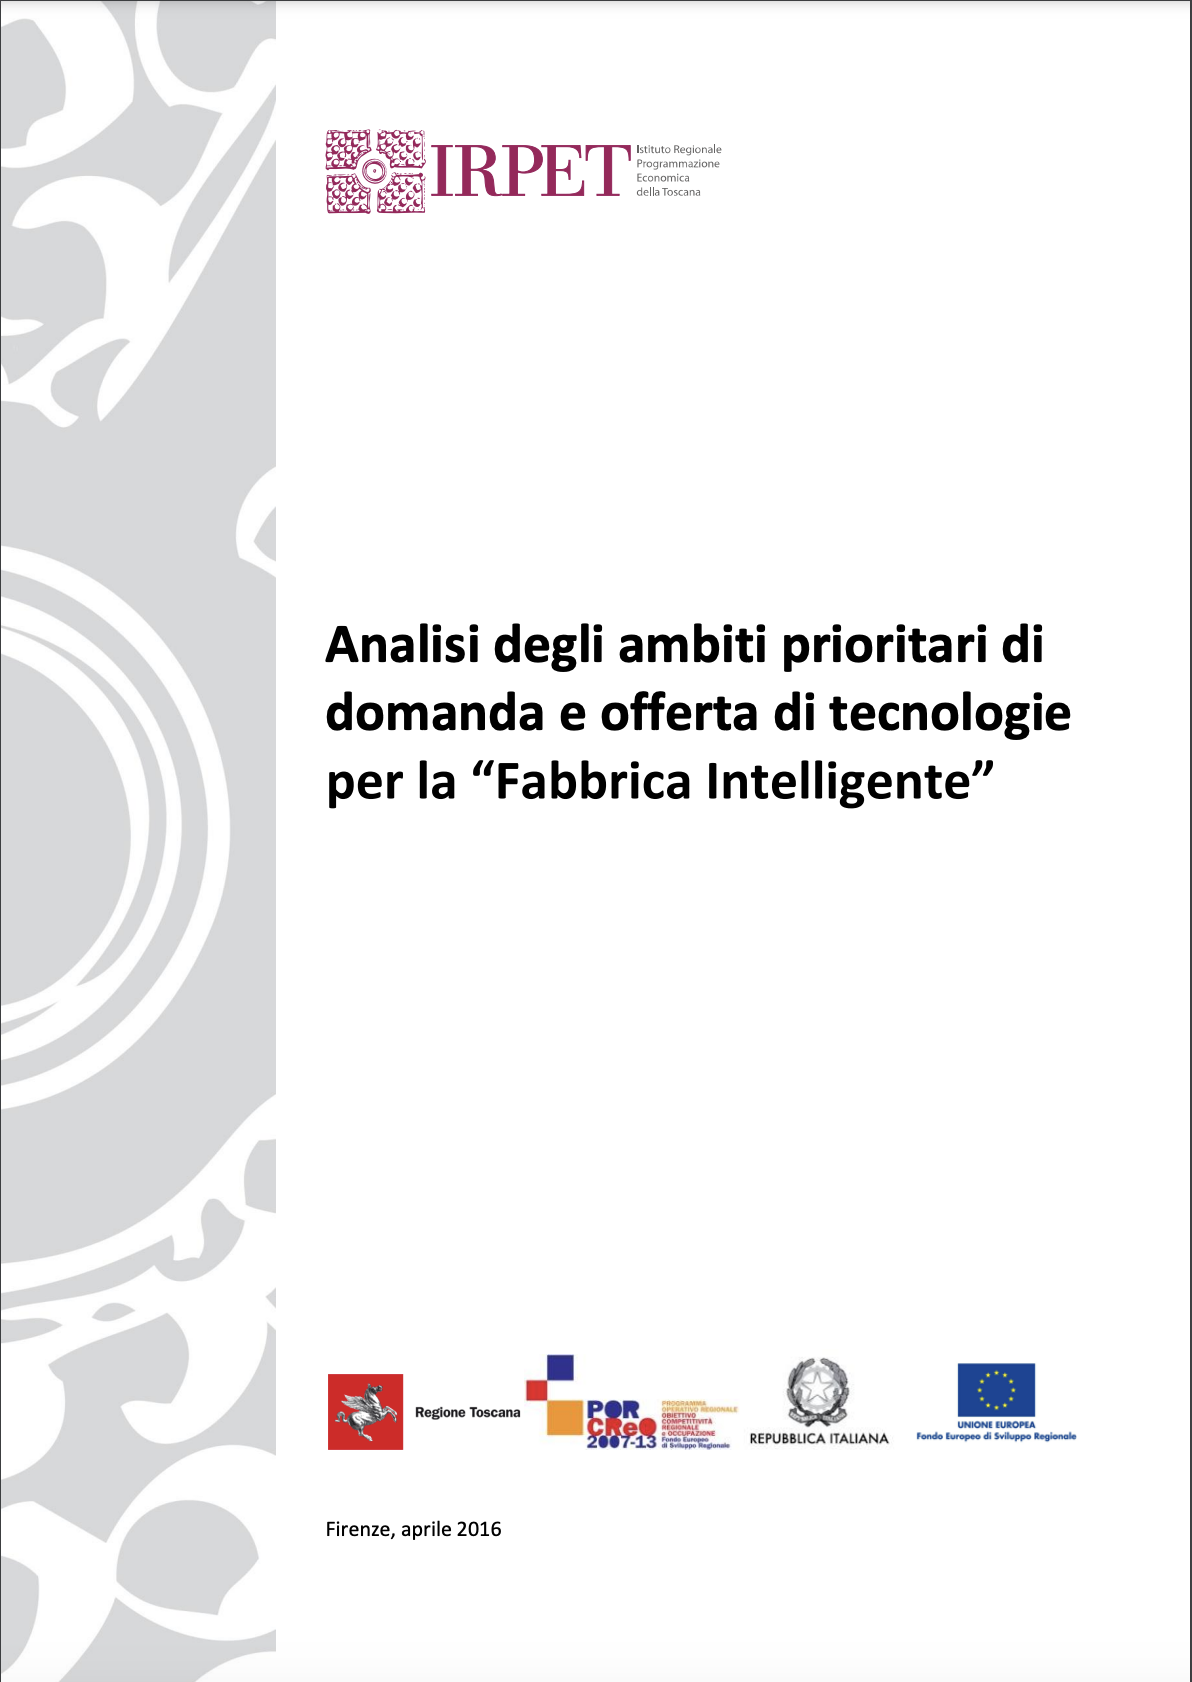 Analisi degli ambiti prioritari di domanda e offerta di tecnologie per la “Fabbrica Intelligente”